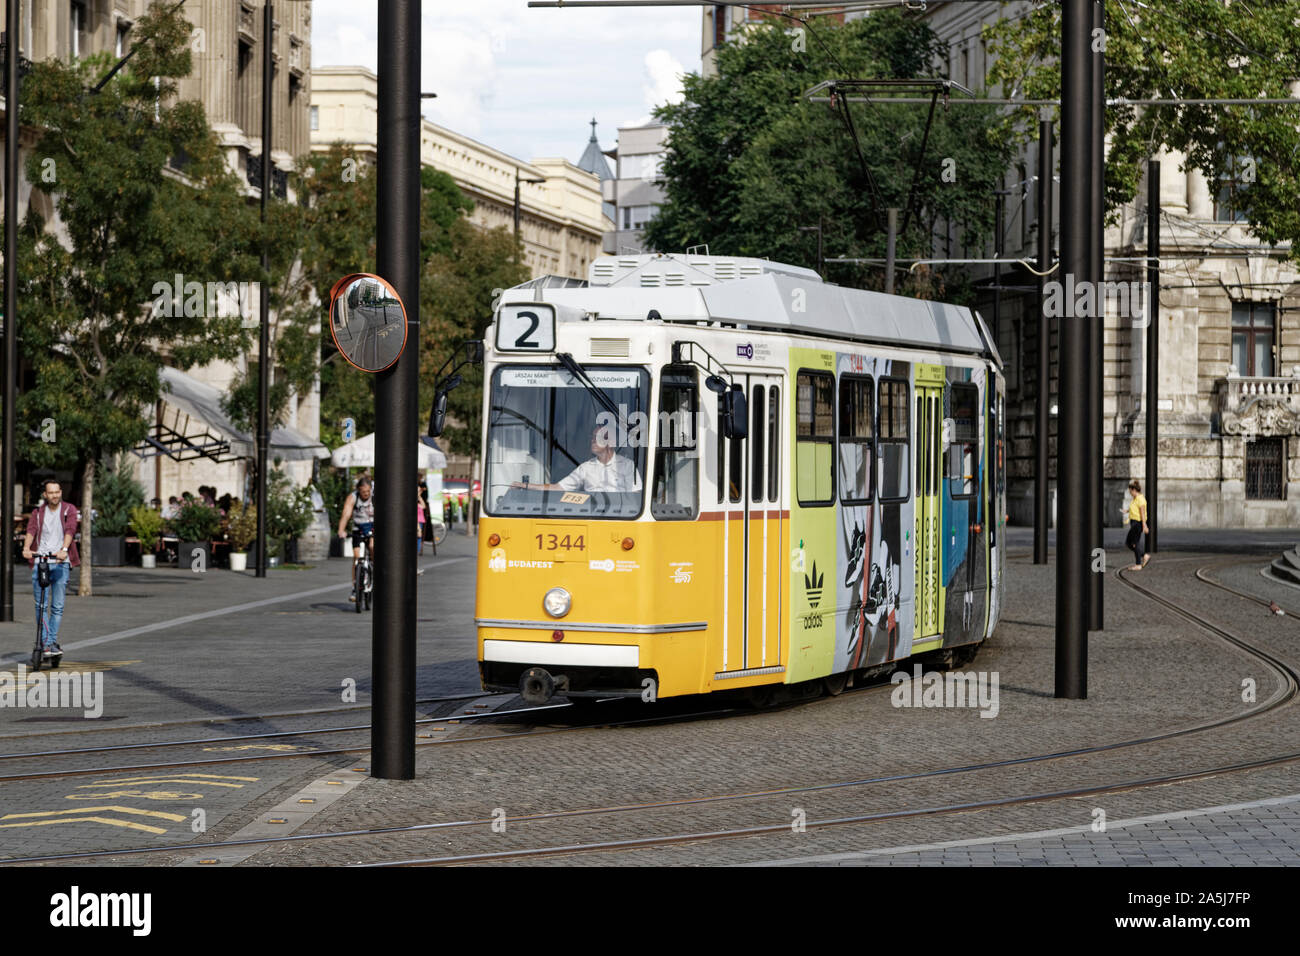 Budapest, Ungarn. 16 August, 2019. Eine Straßenbahn in Budapest, Ungarn. Quelle: Bernard Menigault/Alamy Stock Foto Stockfoto